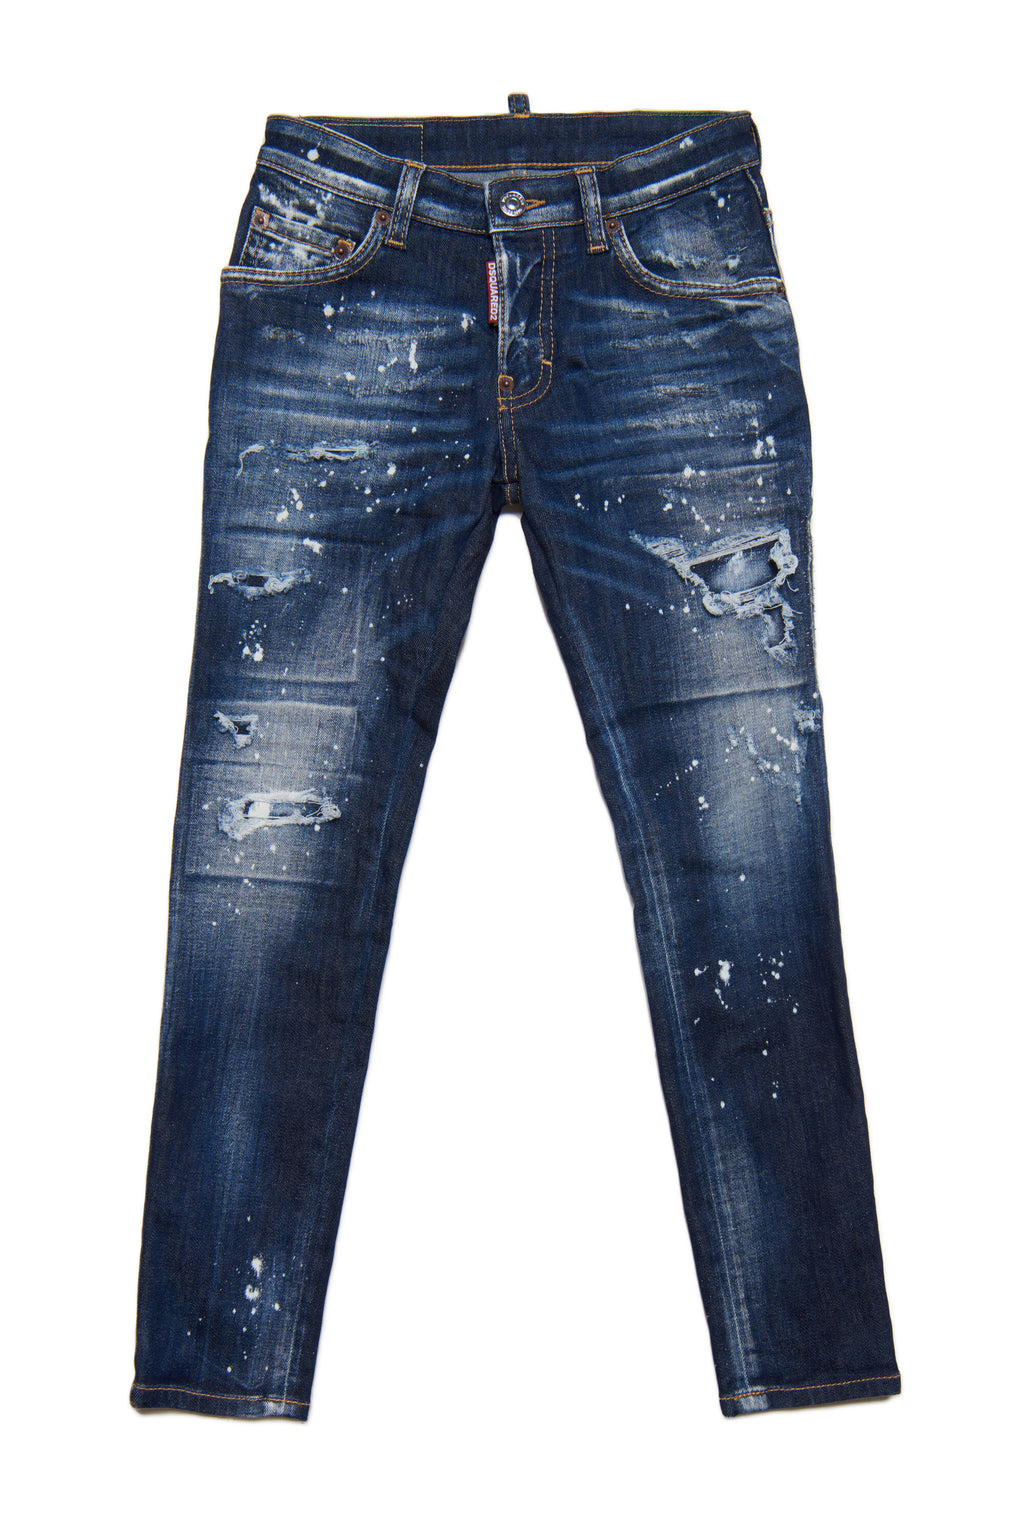 Jeans Skater skinny blu scuro sfumato con rotture e macchie